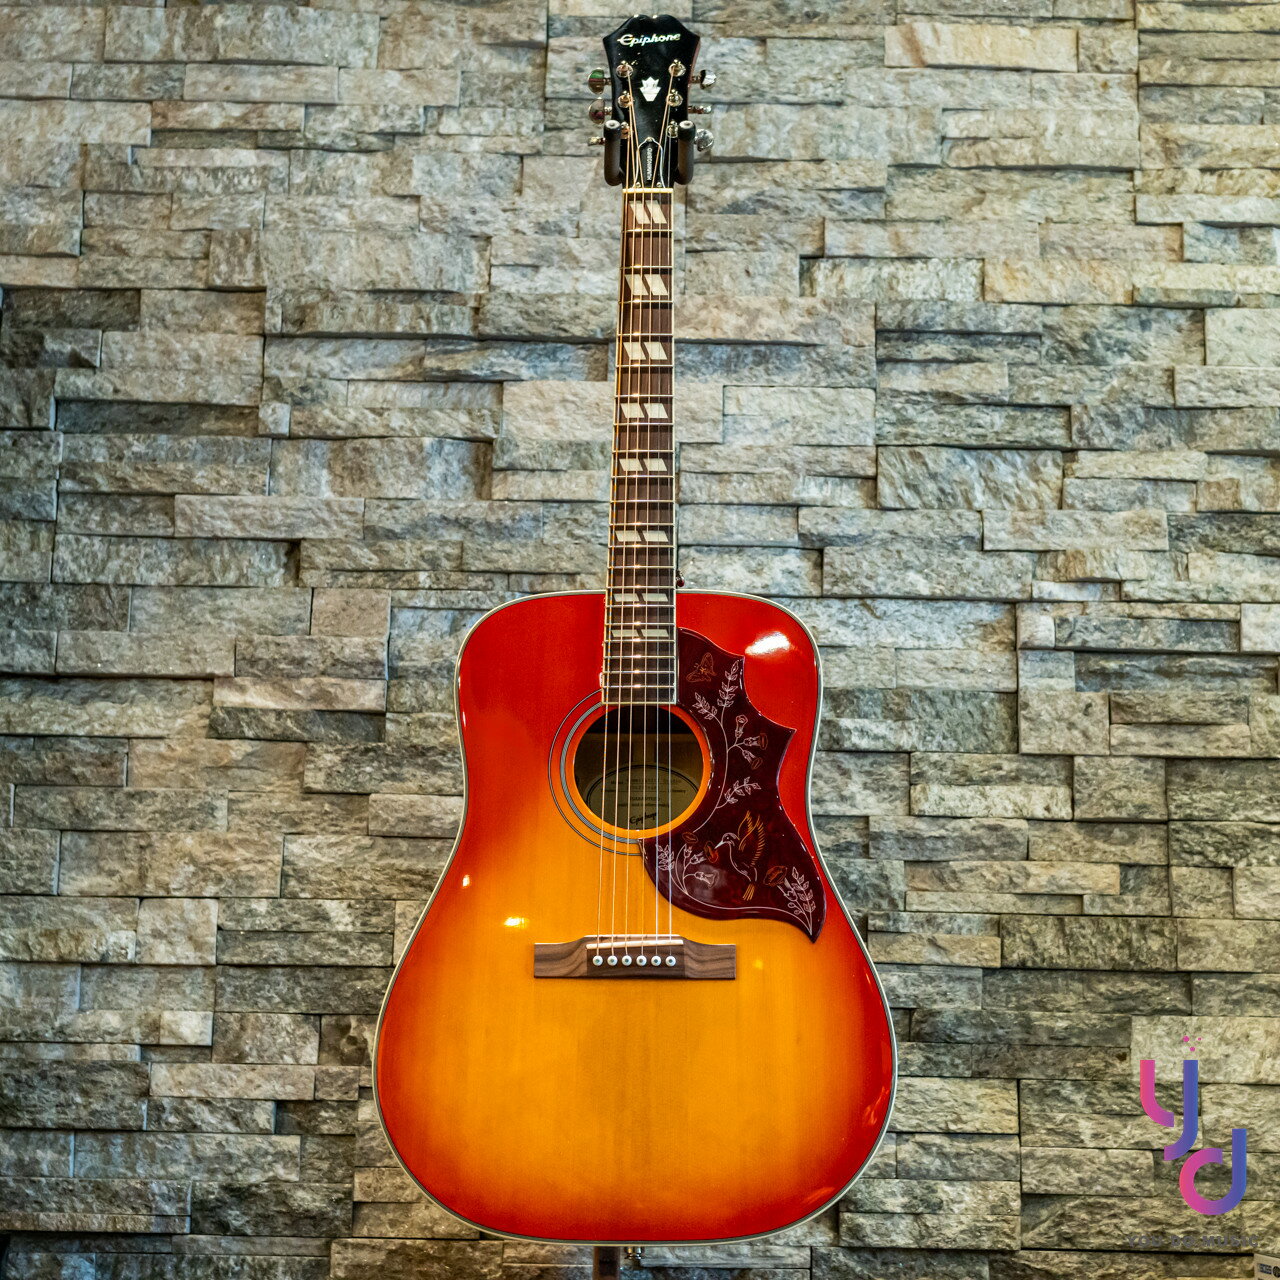 現貨可分期 Gibson Epiphone Humming Bird 帶電版本 蜂鳥 面單板 民謠 電 木 吉他